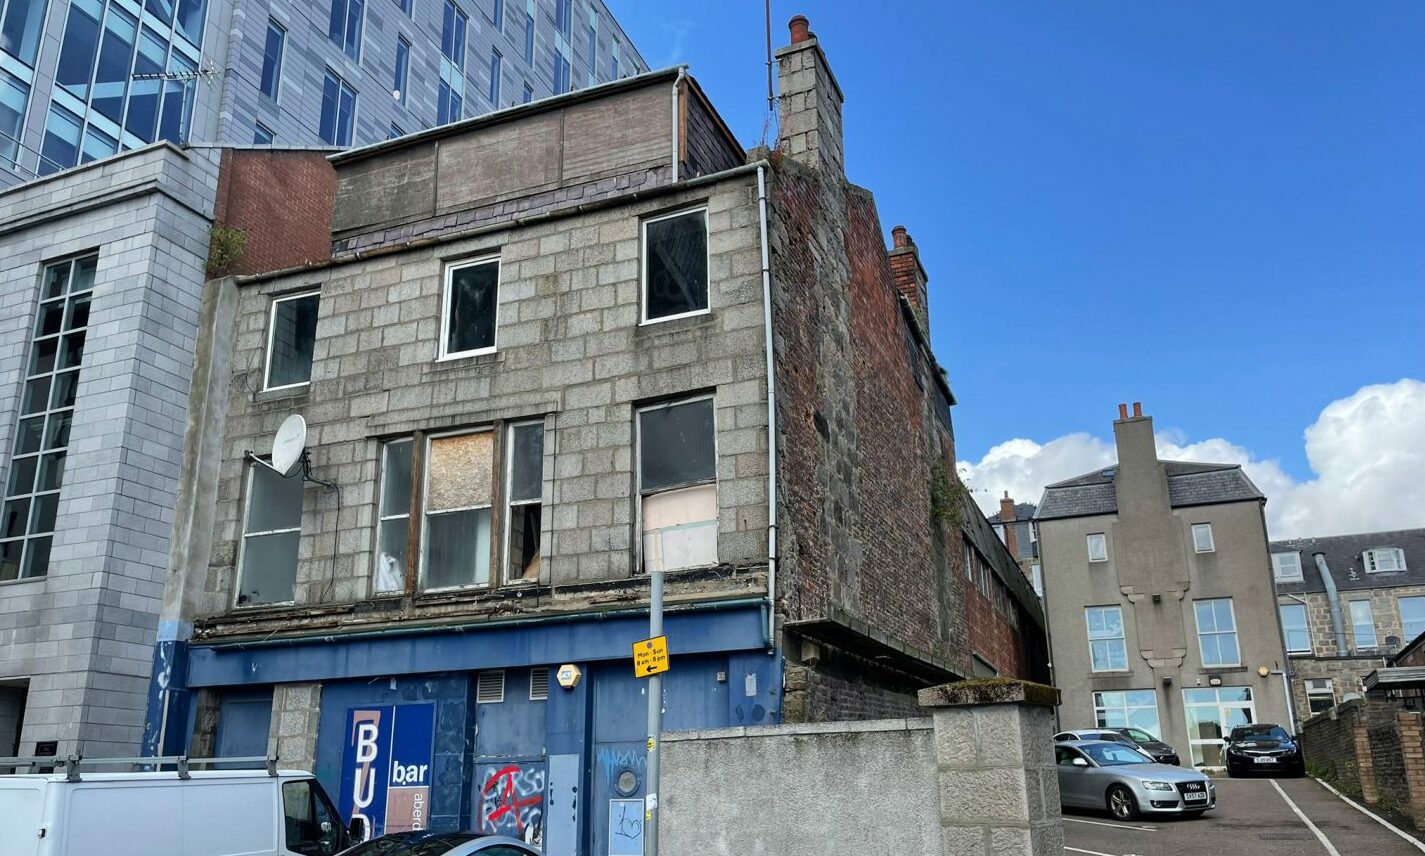 Rear of derelict Budz Bar building in Aberdeen.